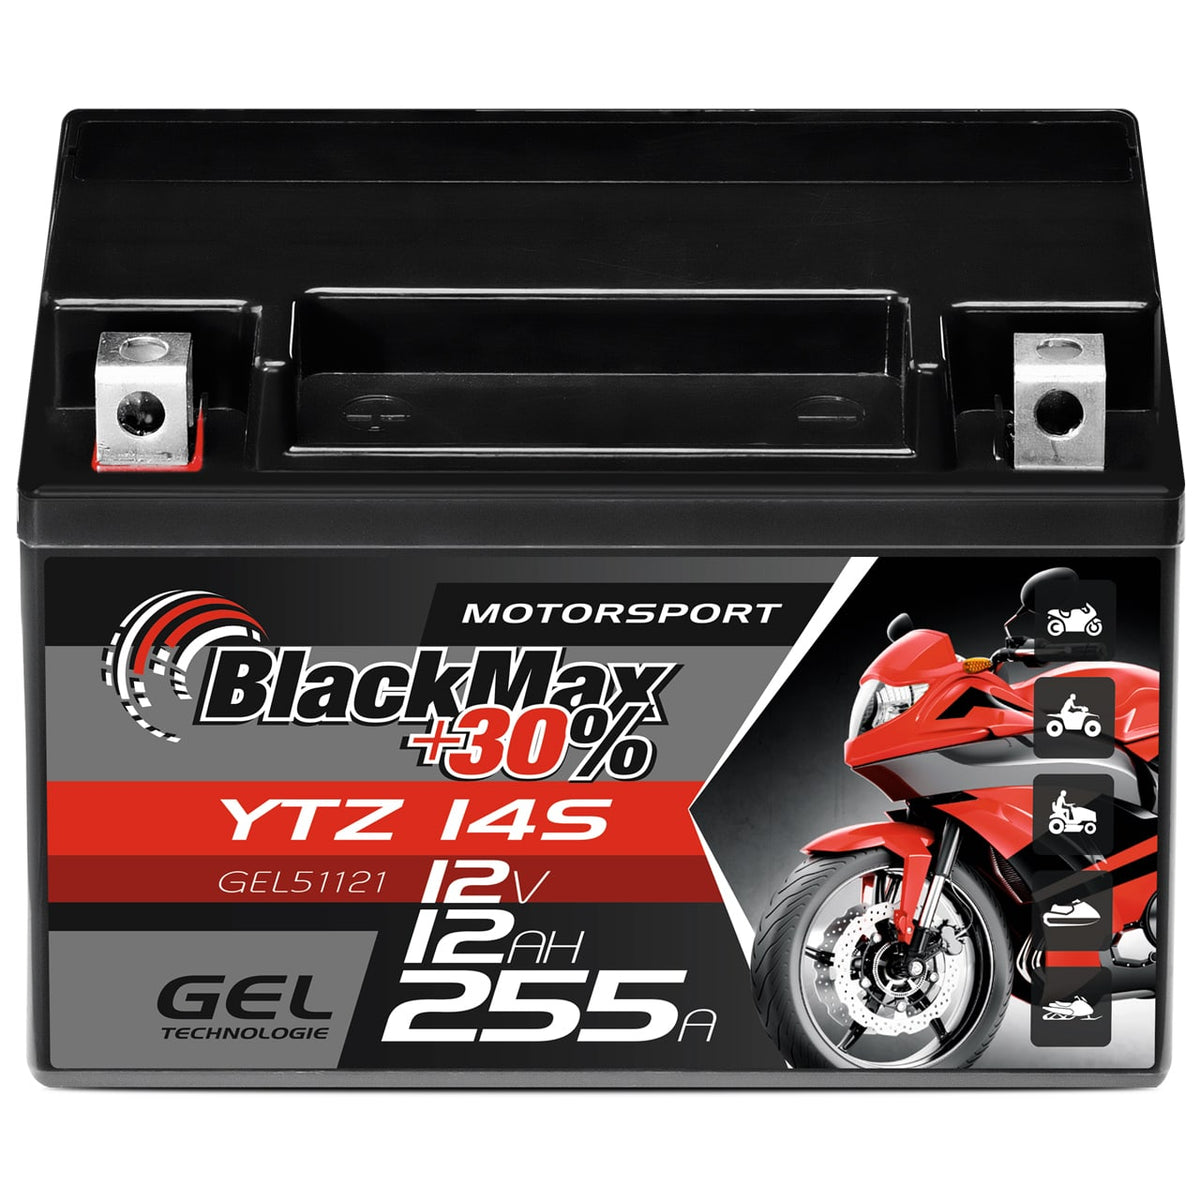 https://www.batterie-industrie-germany.de/cdn/shop/files/Motorradbatterie-Motorsport-GEL-YTZ-14S-BlackMaxGEL51121-12V-12Ah-Front_1200x.jpg?v=1700658684